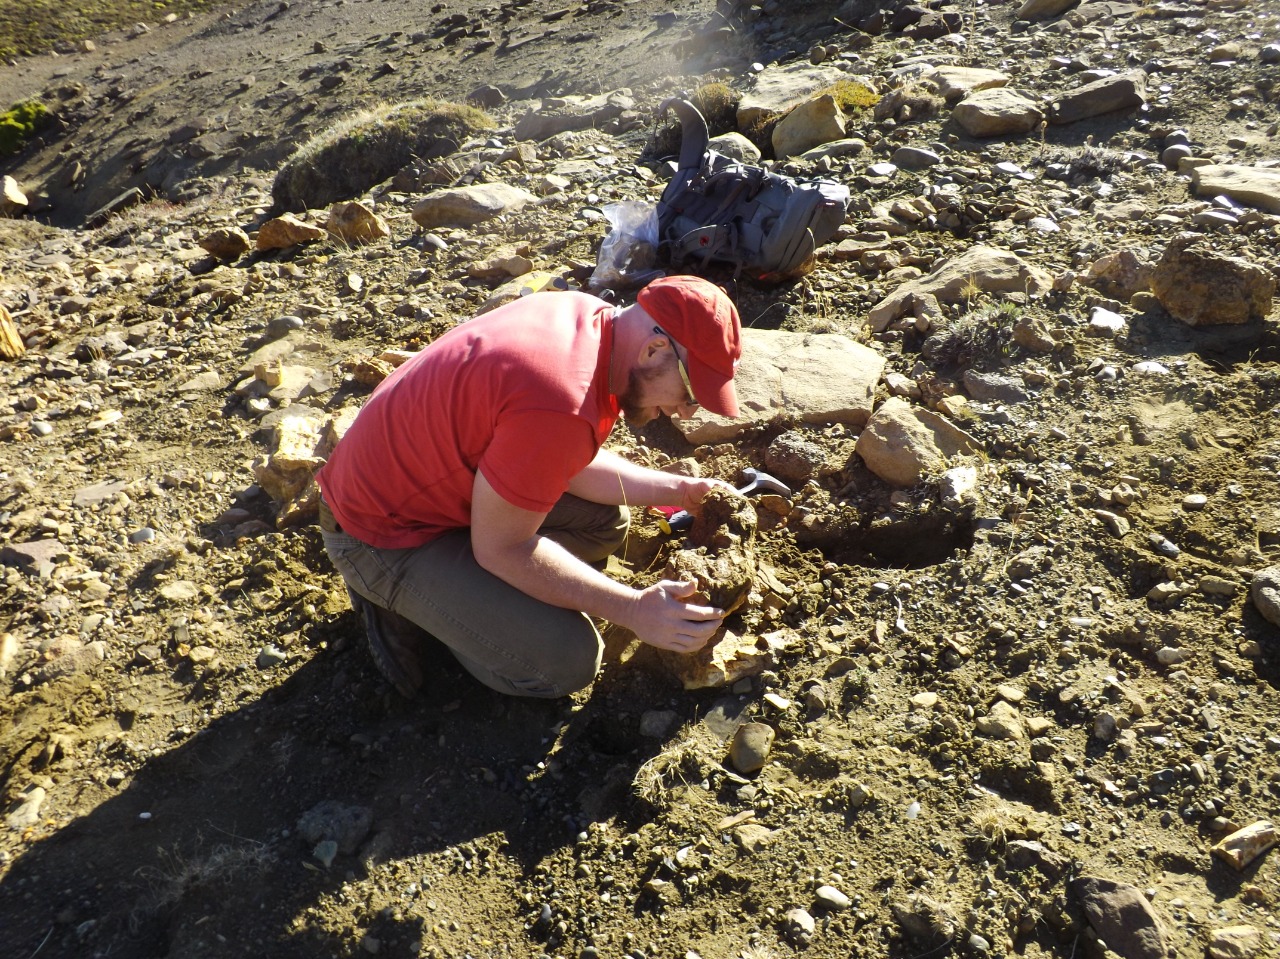 El paleobotánico Leandro Martínez es investigador del CONICET en el Instituto de Botánica Darwinion y Profesor en la Universidad Nacional de La Plata. Estudia los troncos petrificados en Neuquén.